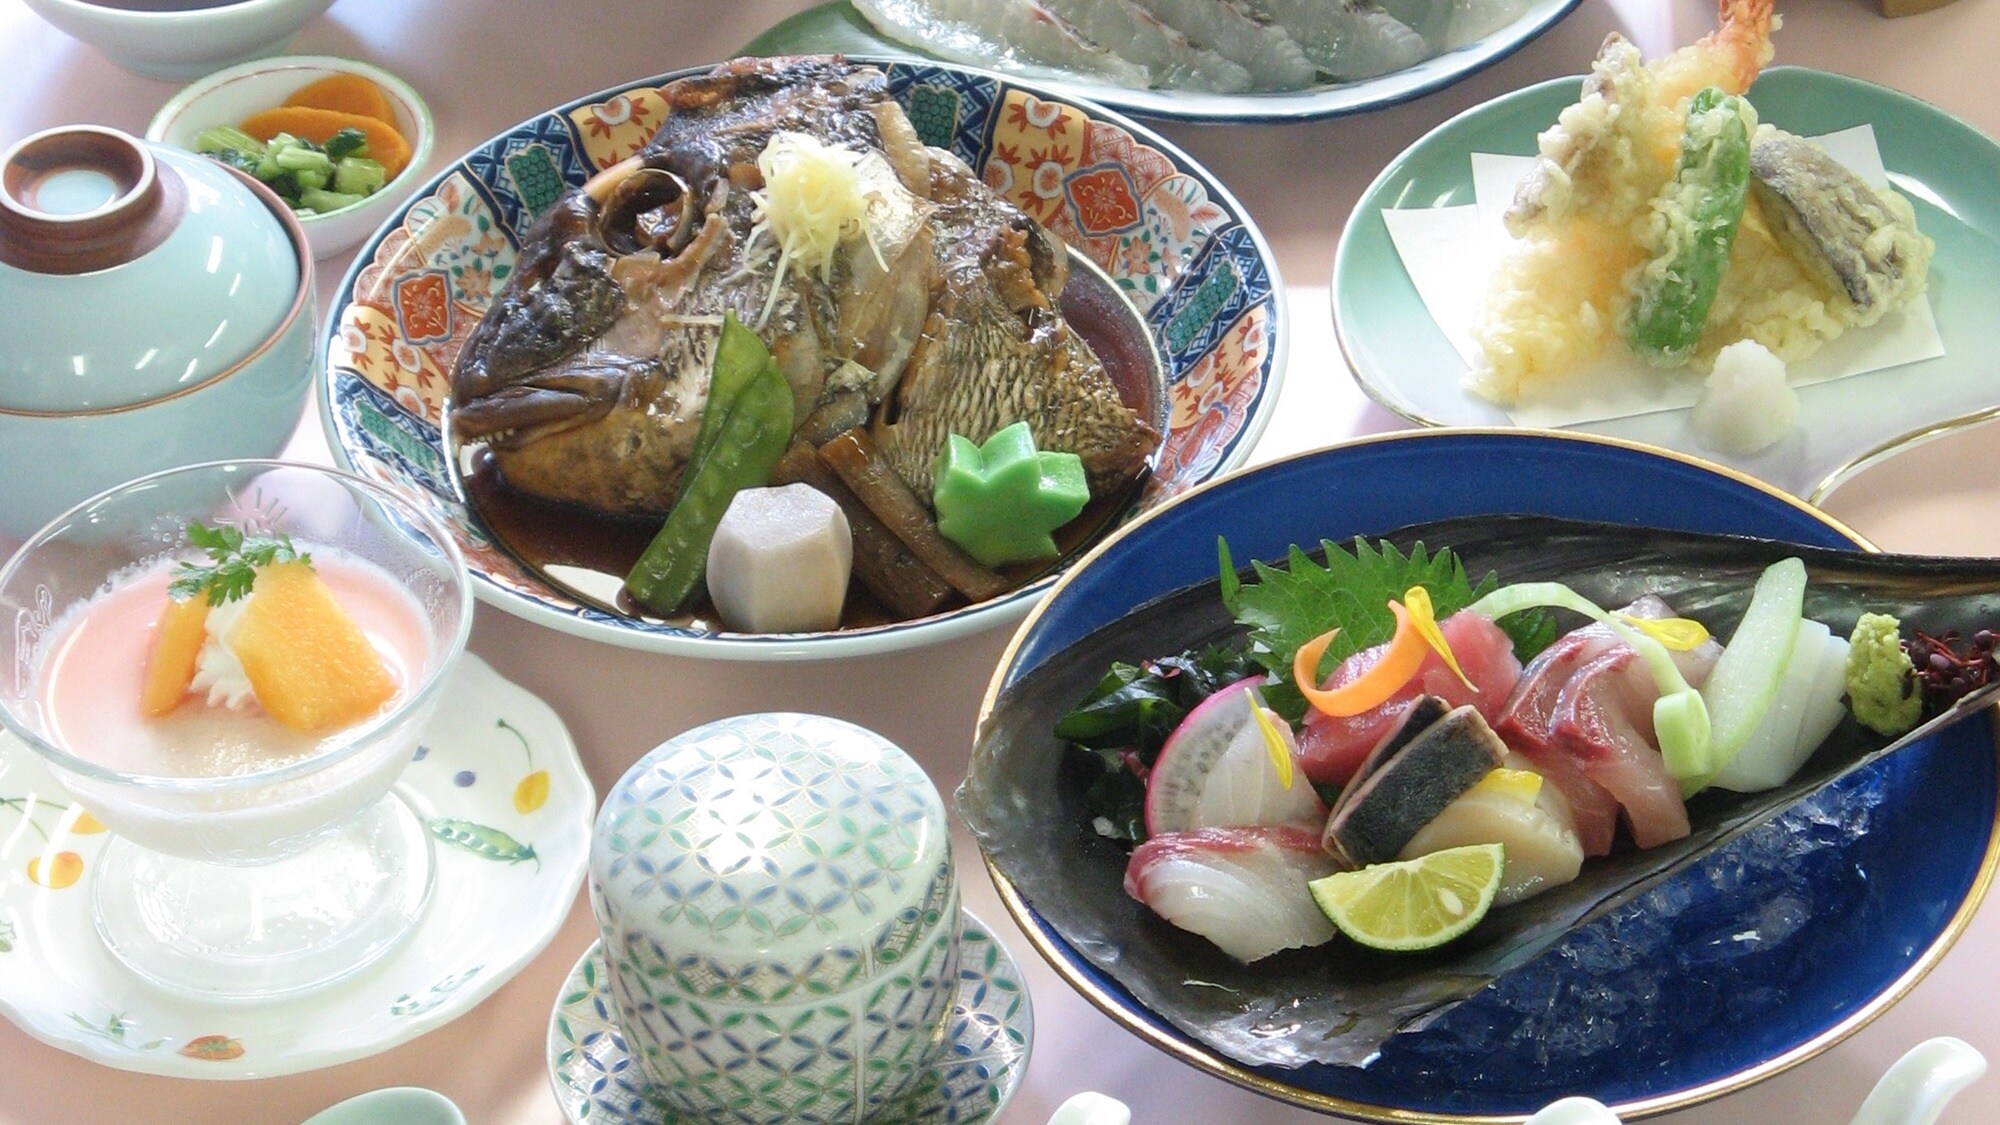 [แผนไม้ไผ่] และหลักสูตร "ทะเล" ที่ใช้อาหารทะเลมากมายจากเมืองไคโยโทคุชิมะ